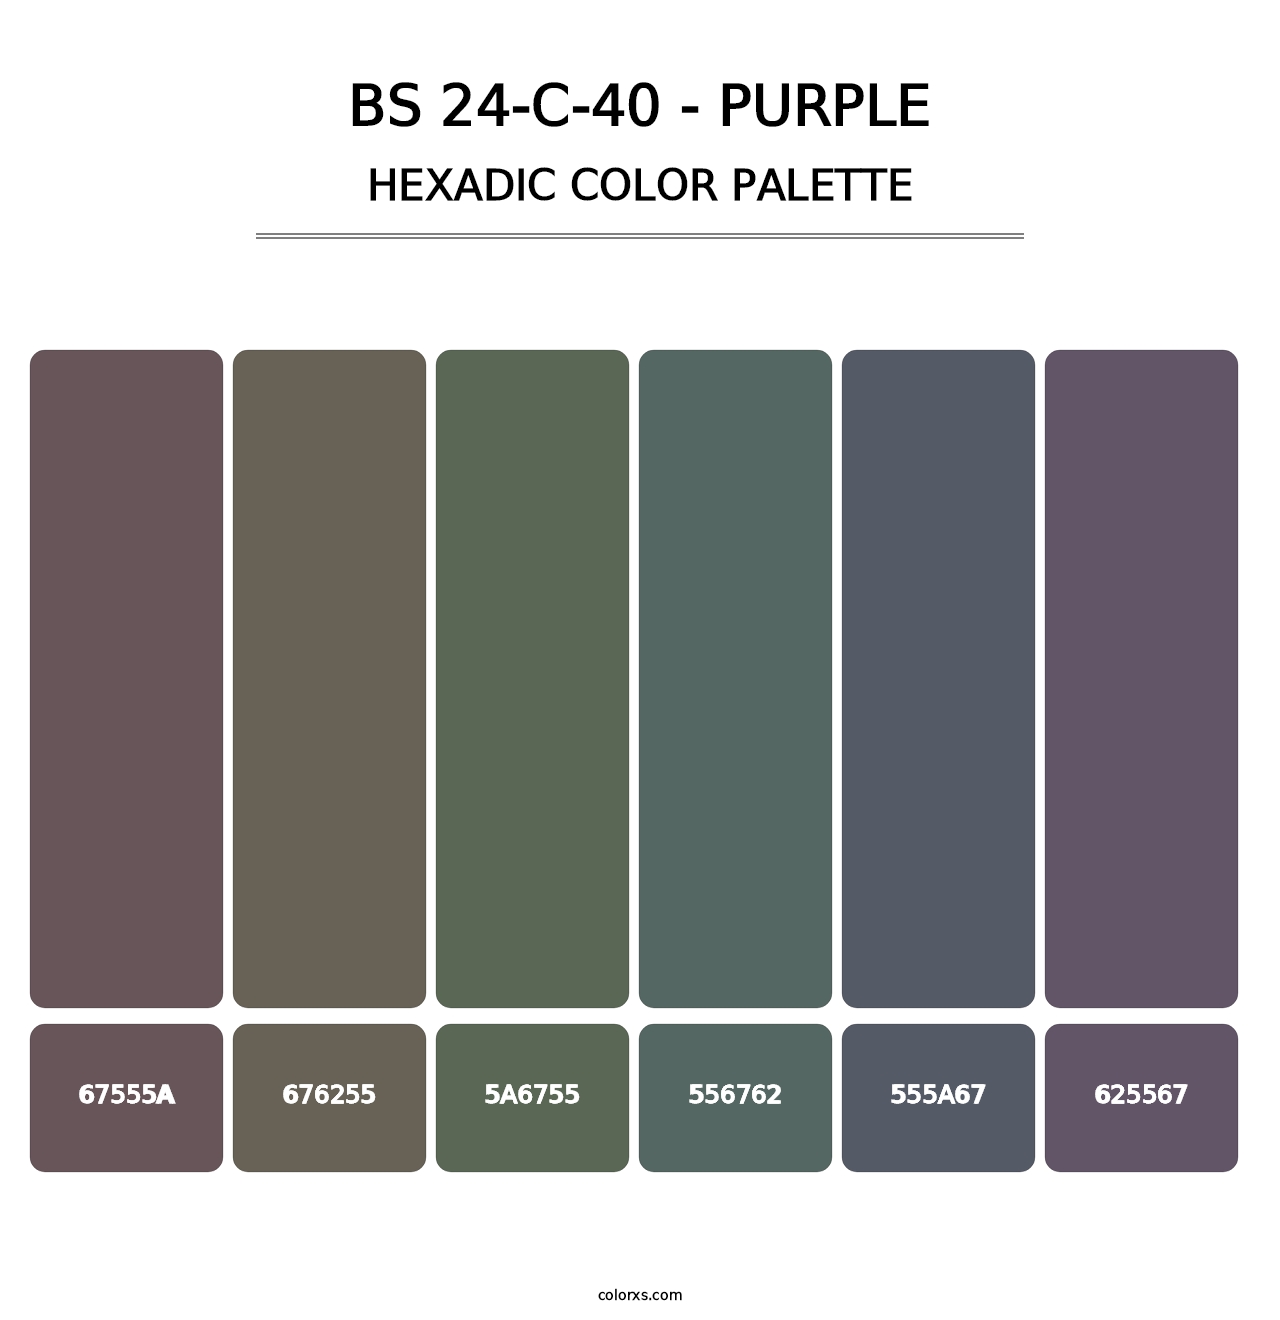 BS 24-C-40 - Purple - Hexadic Color Palette